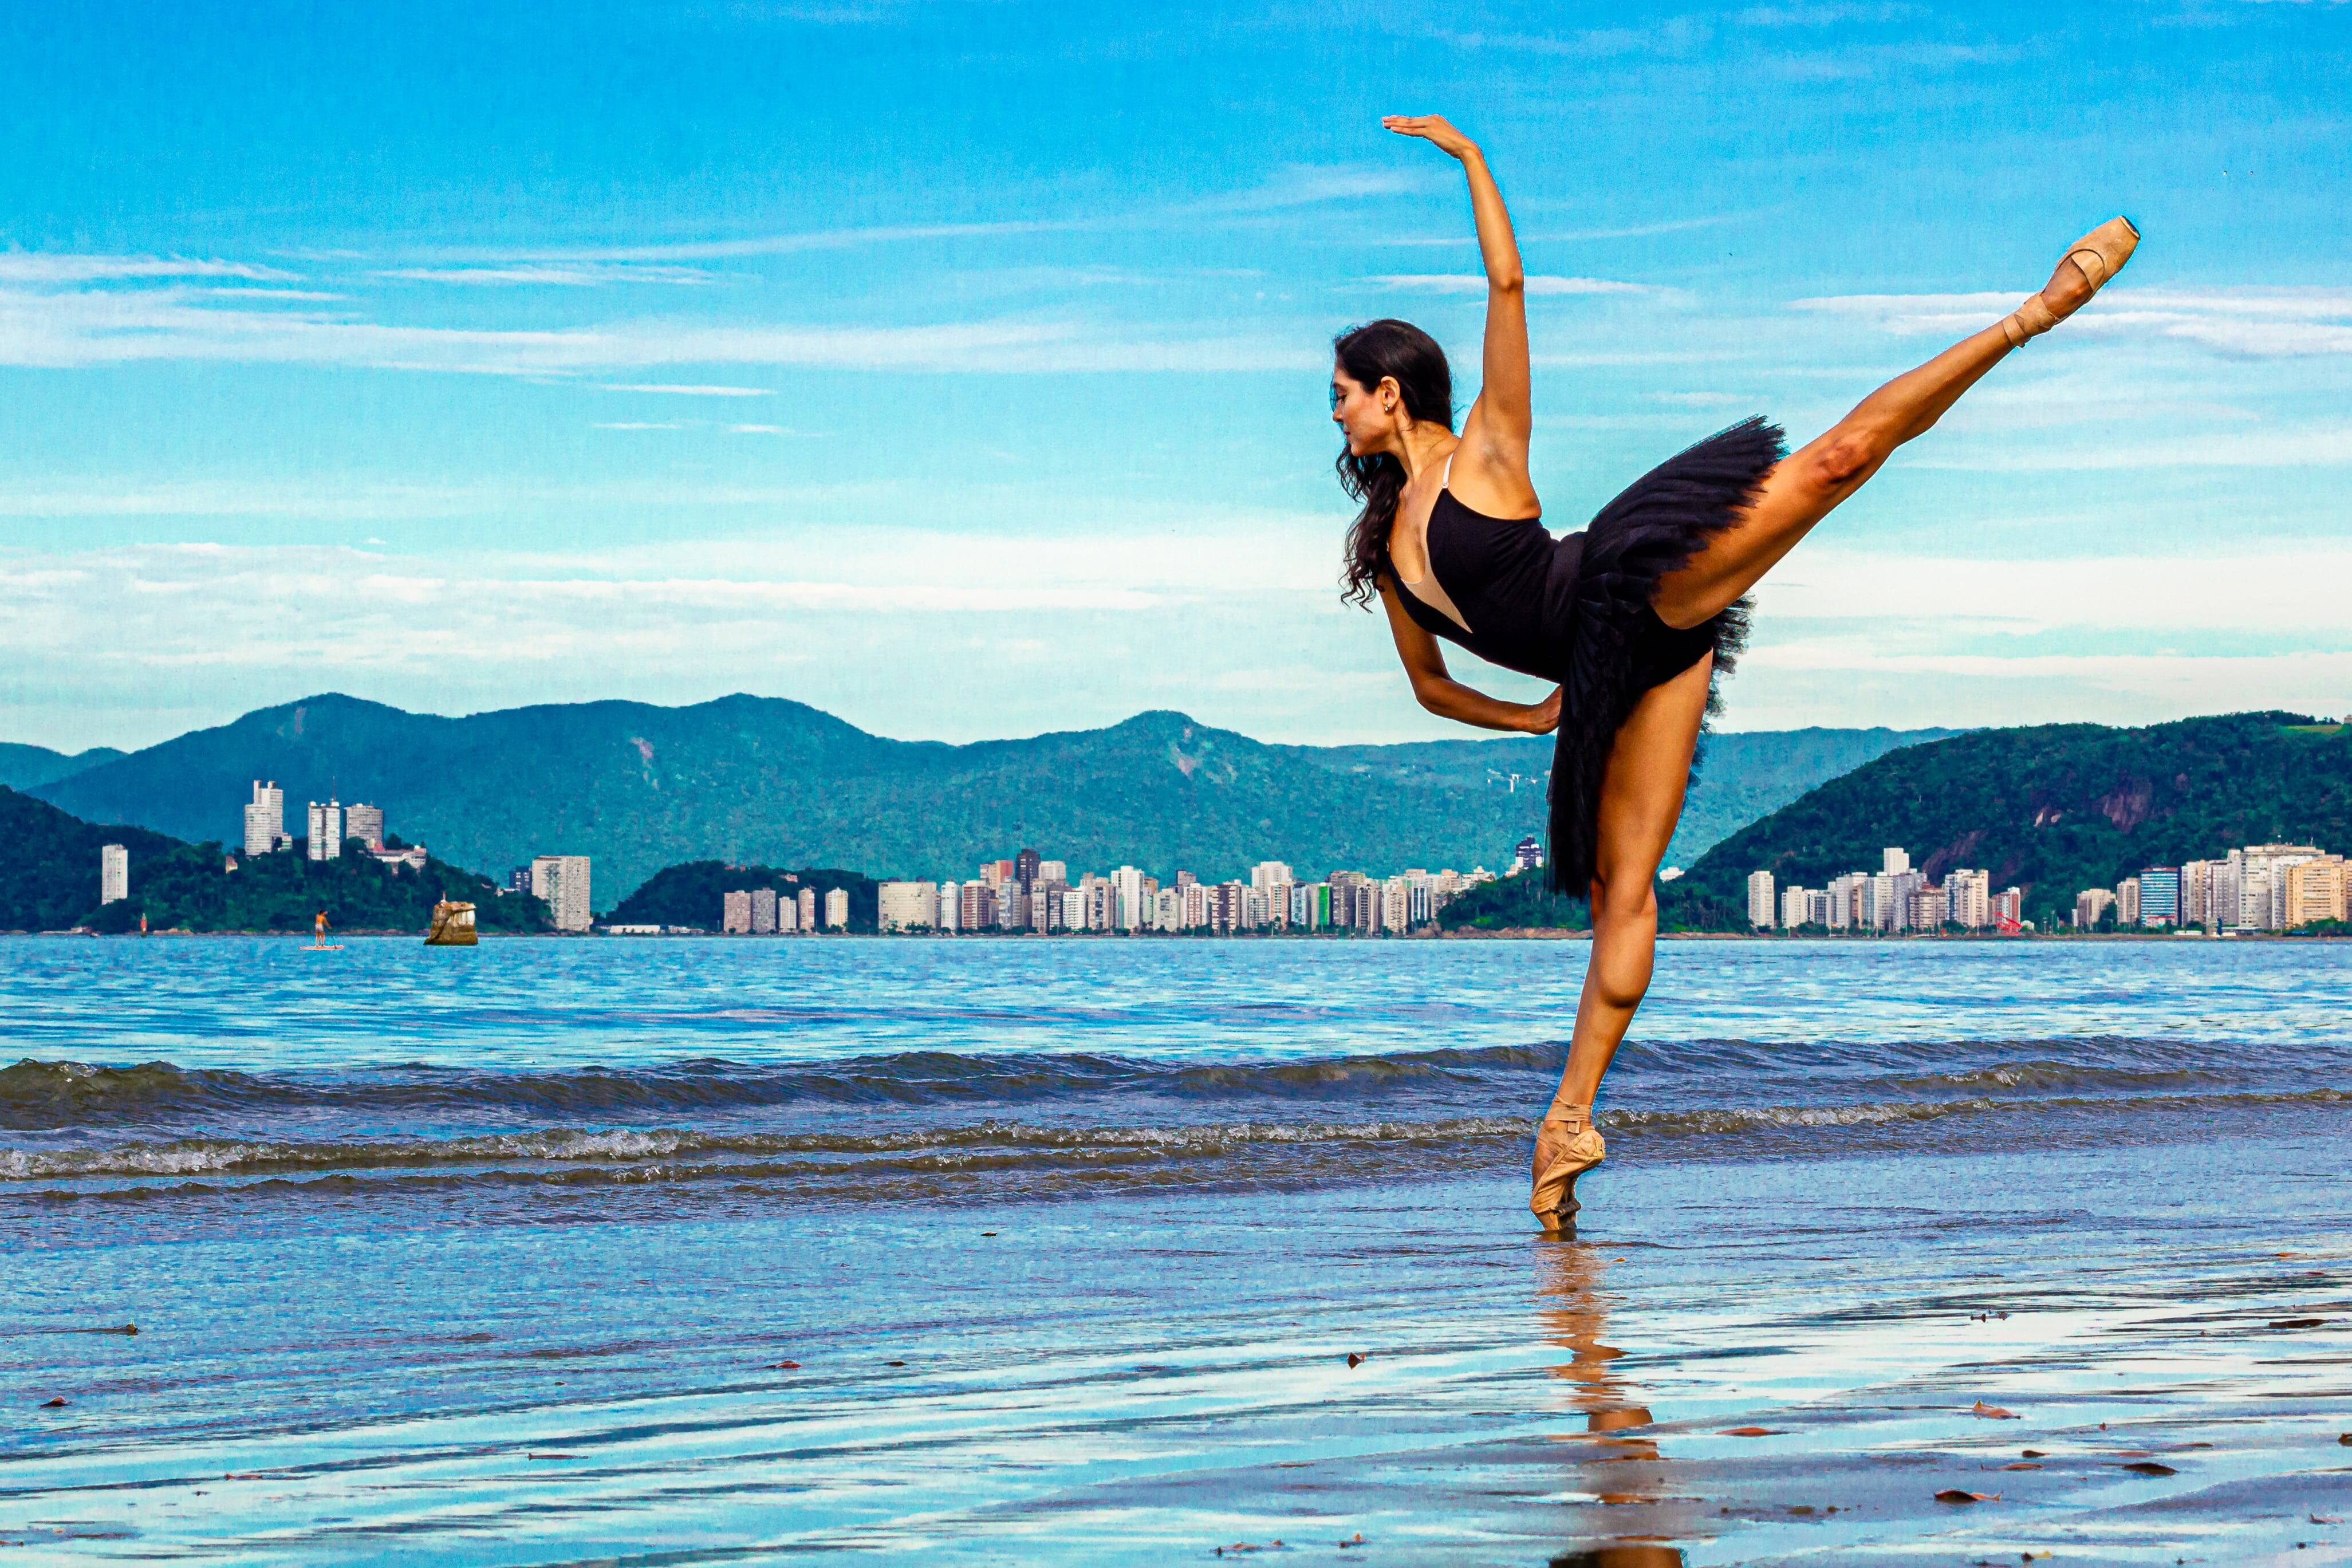 Bailarina na praia de Santos. Foto: Reprodução/Clica e Respira